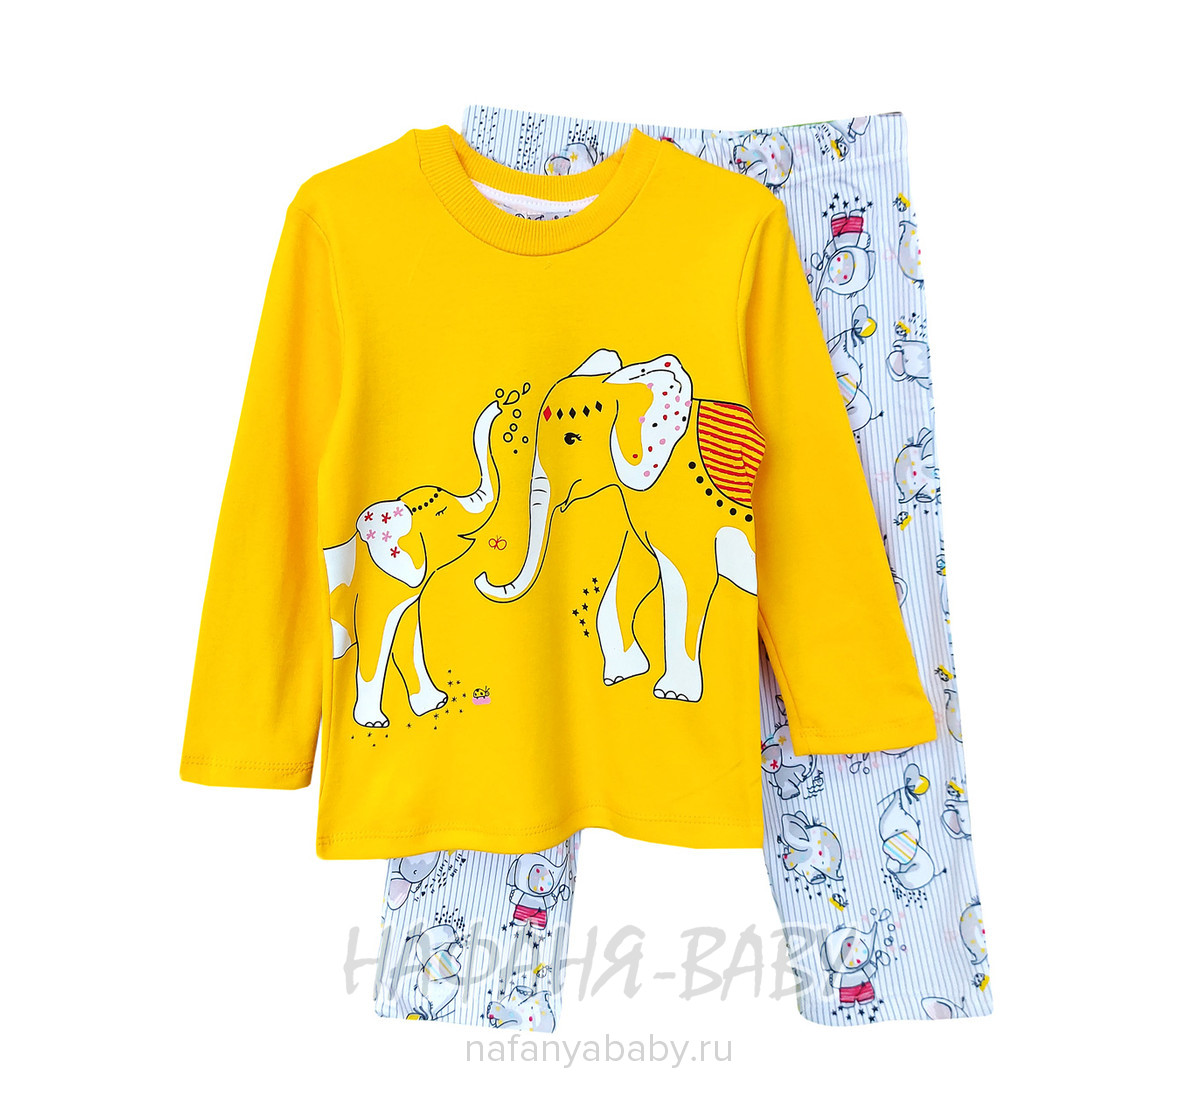 Детская пижама СЛОНИКИ POLI FONI, купить в интернет магазине Нафаня. арт: 305.